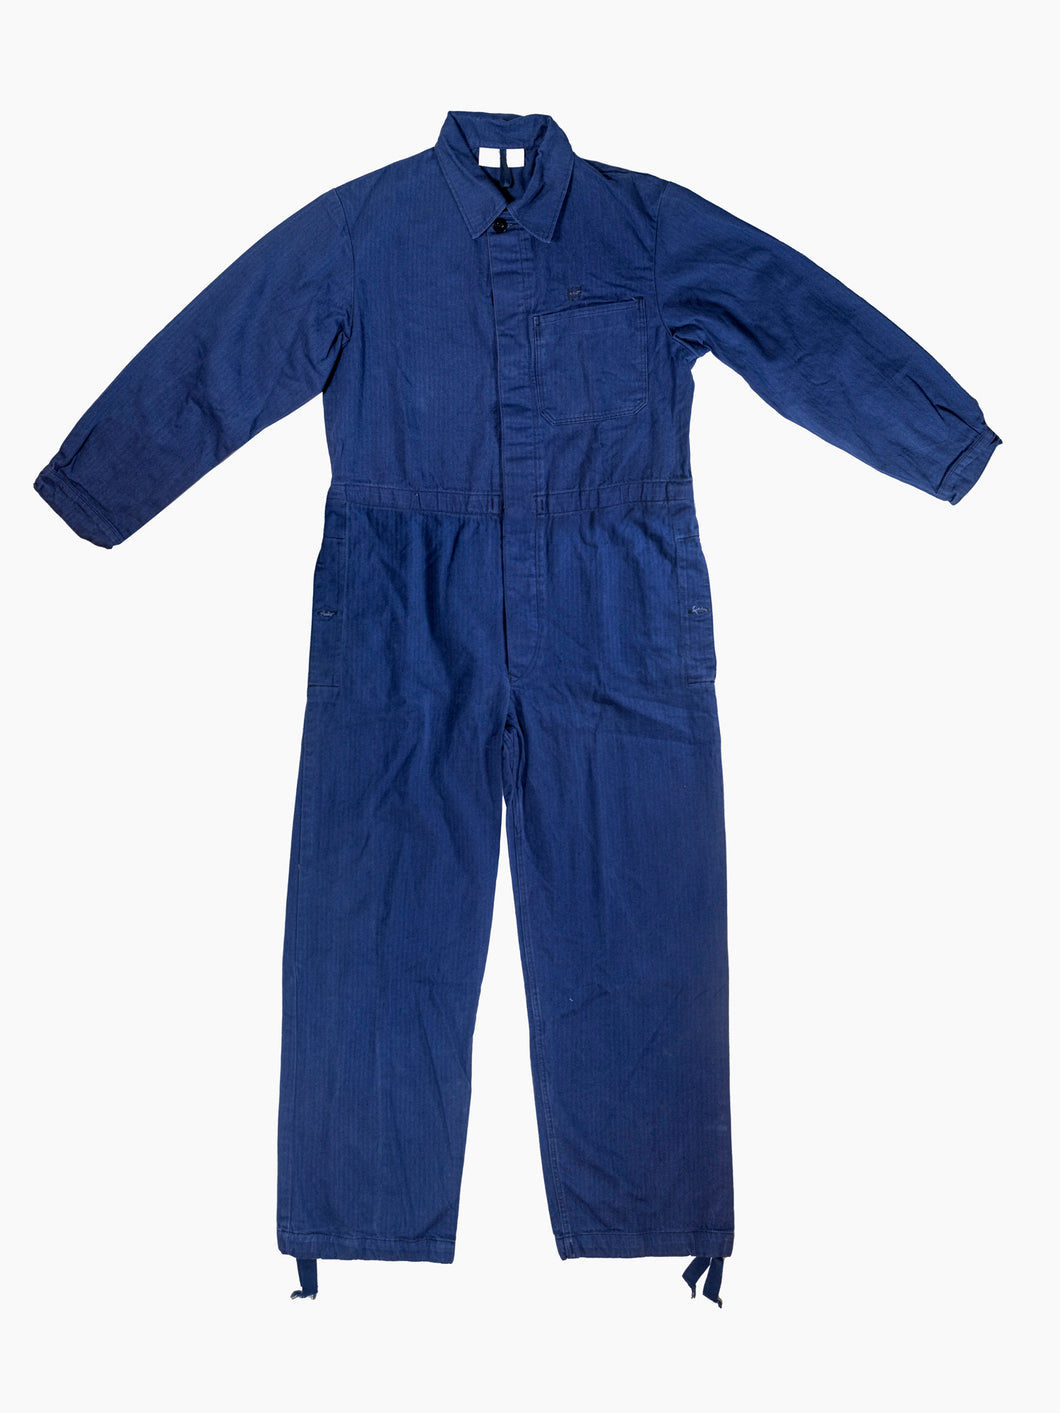 Vintage Navy Blue Jumpsuit - Herringbone Twill